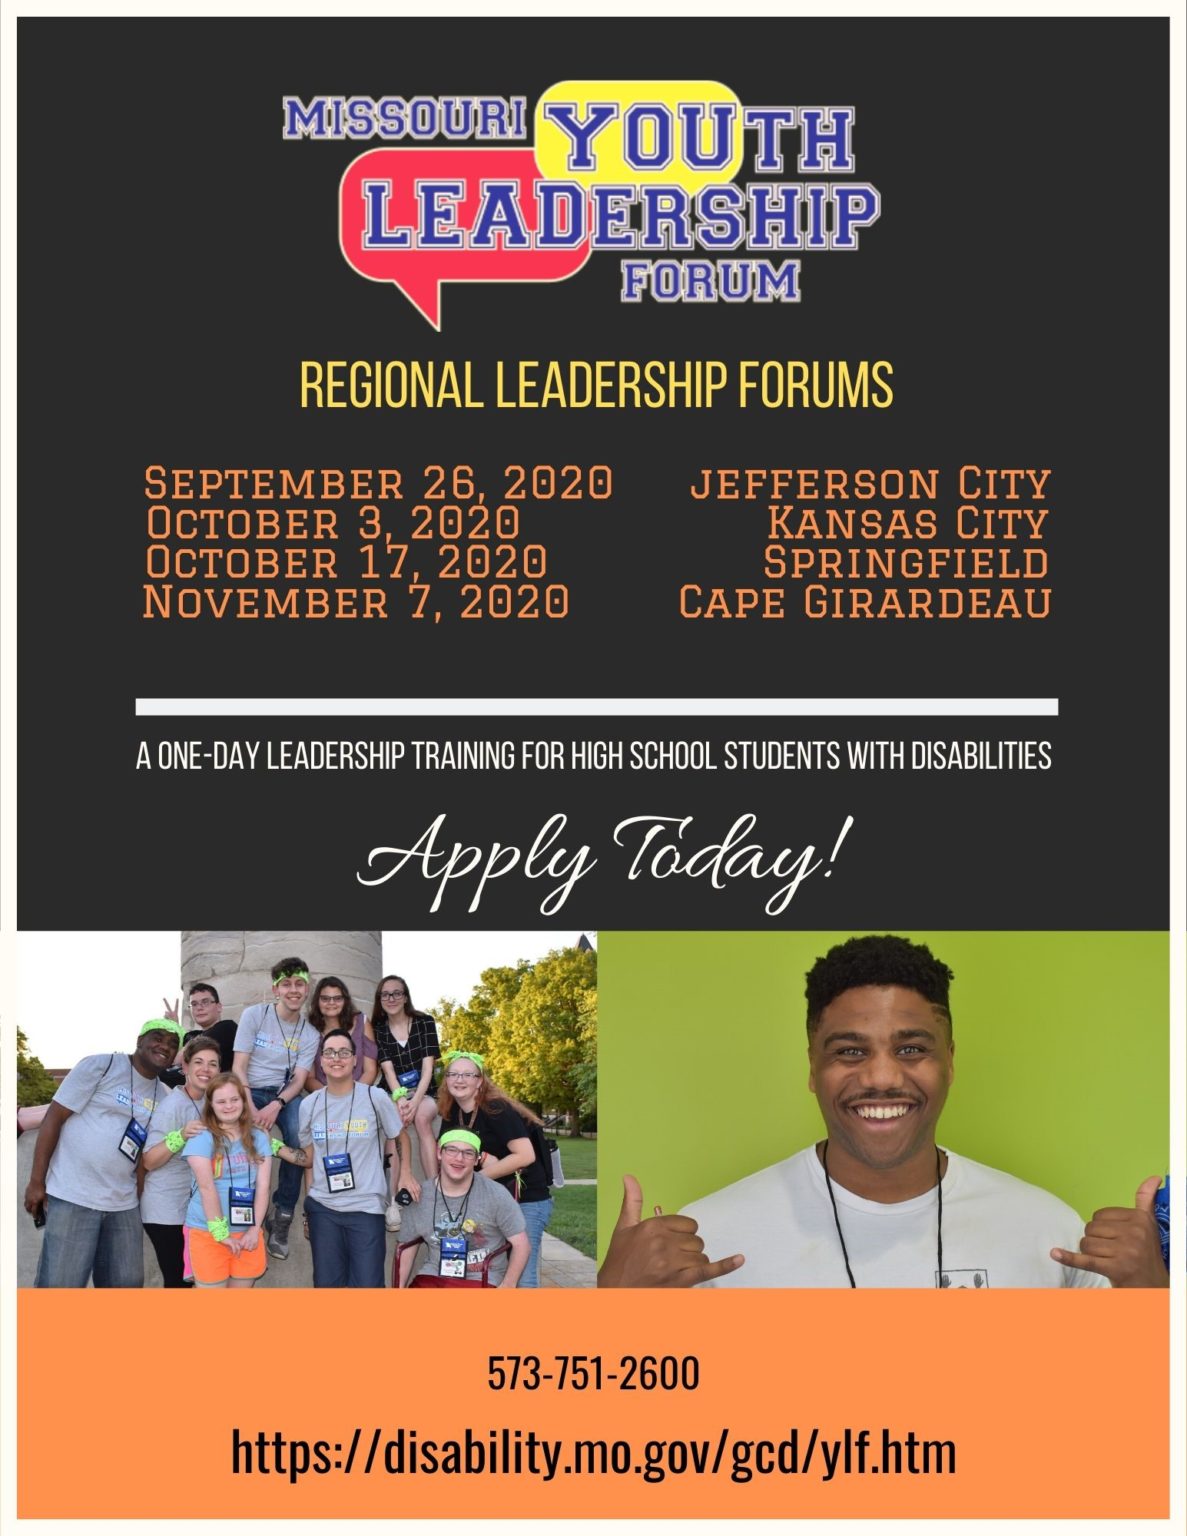 Missouri Youth Leadership Forum Introduces Regional Leadership Forums